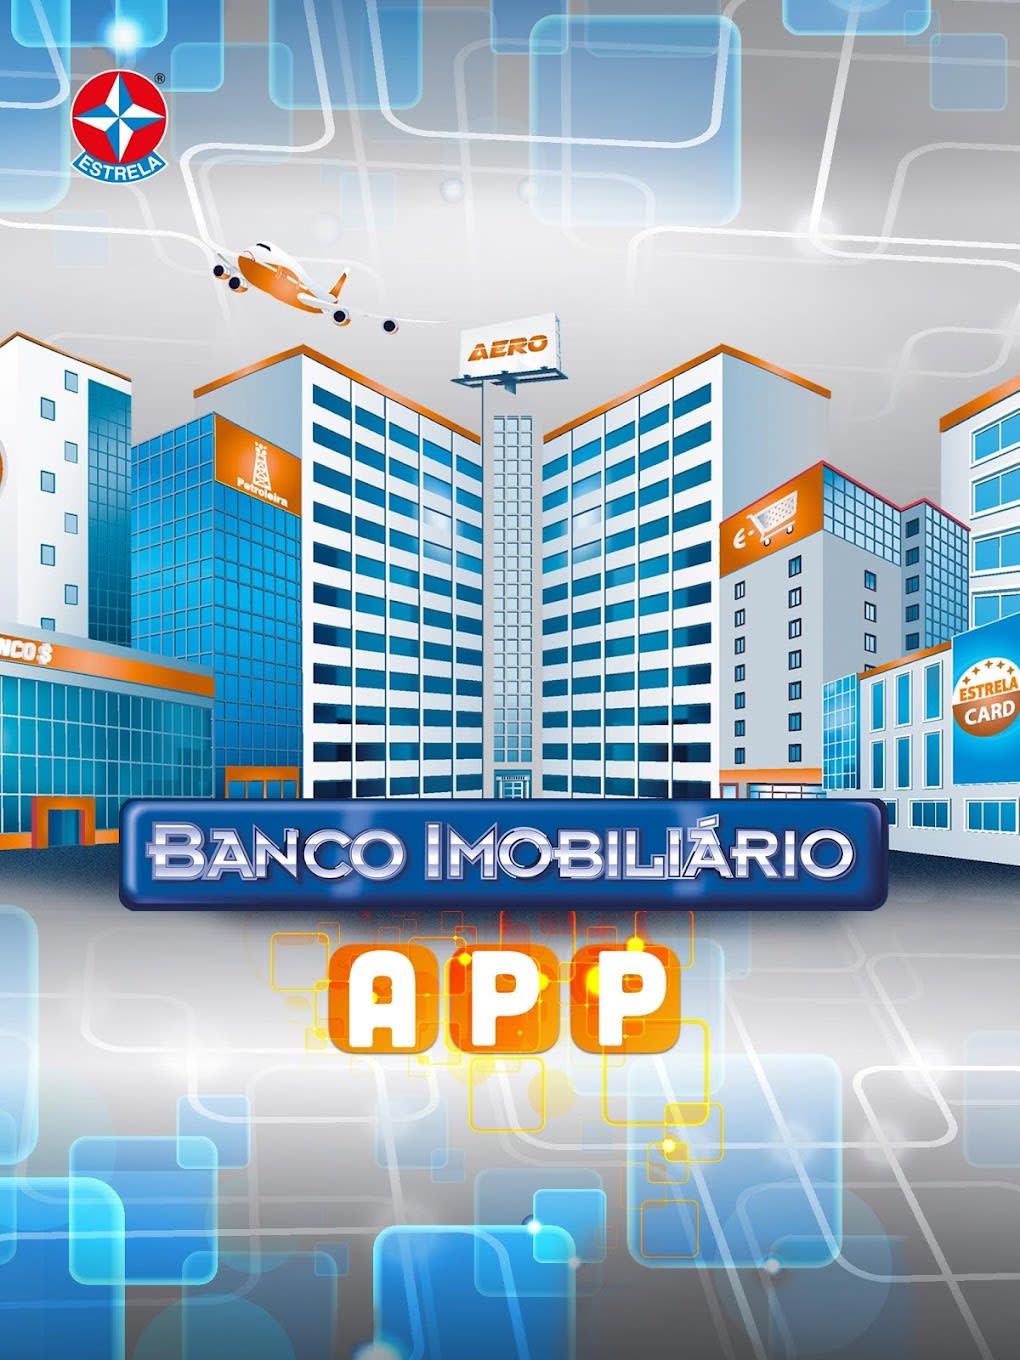 Conheça o jogo Banco Imobiliário com App